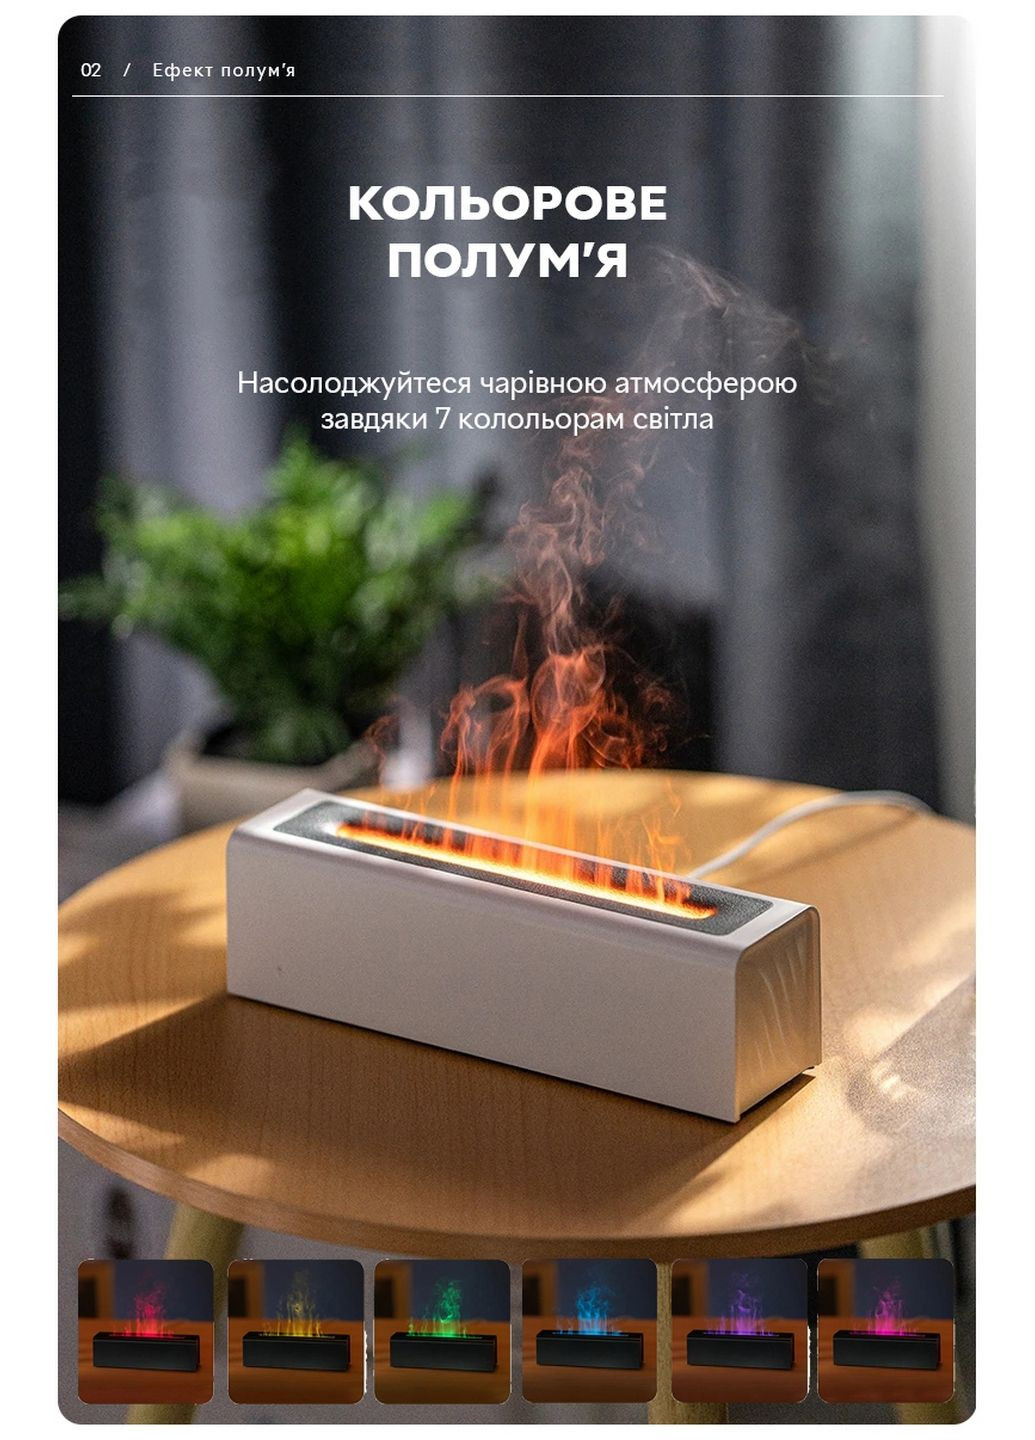 Зволожувач повітря портативний DQ-711 Nordic Style Flame V3 аромадифузор електричний, ефект полум'я, ПОДАРУНОК + 2 Арома олії Kinscoter (293483492)